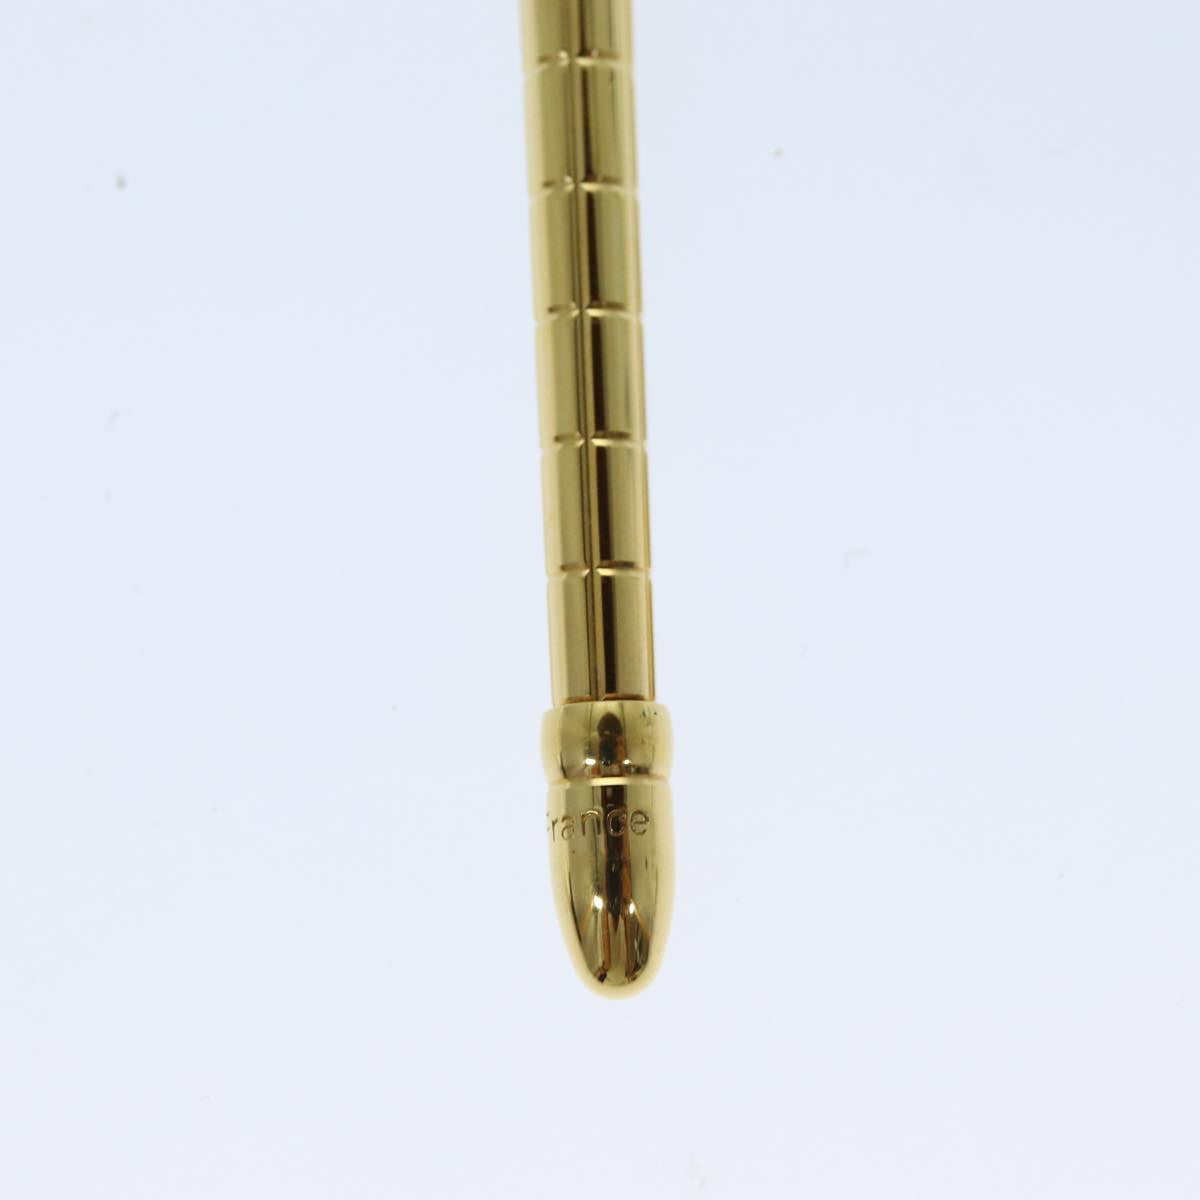 LOUIS VUITTON Styro Agenda Ballpoint Pen metal Gold Tone LV Auth ki4516